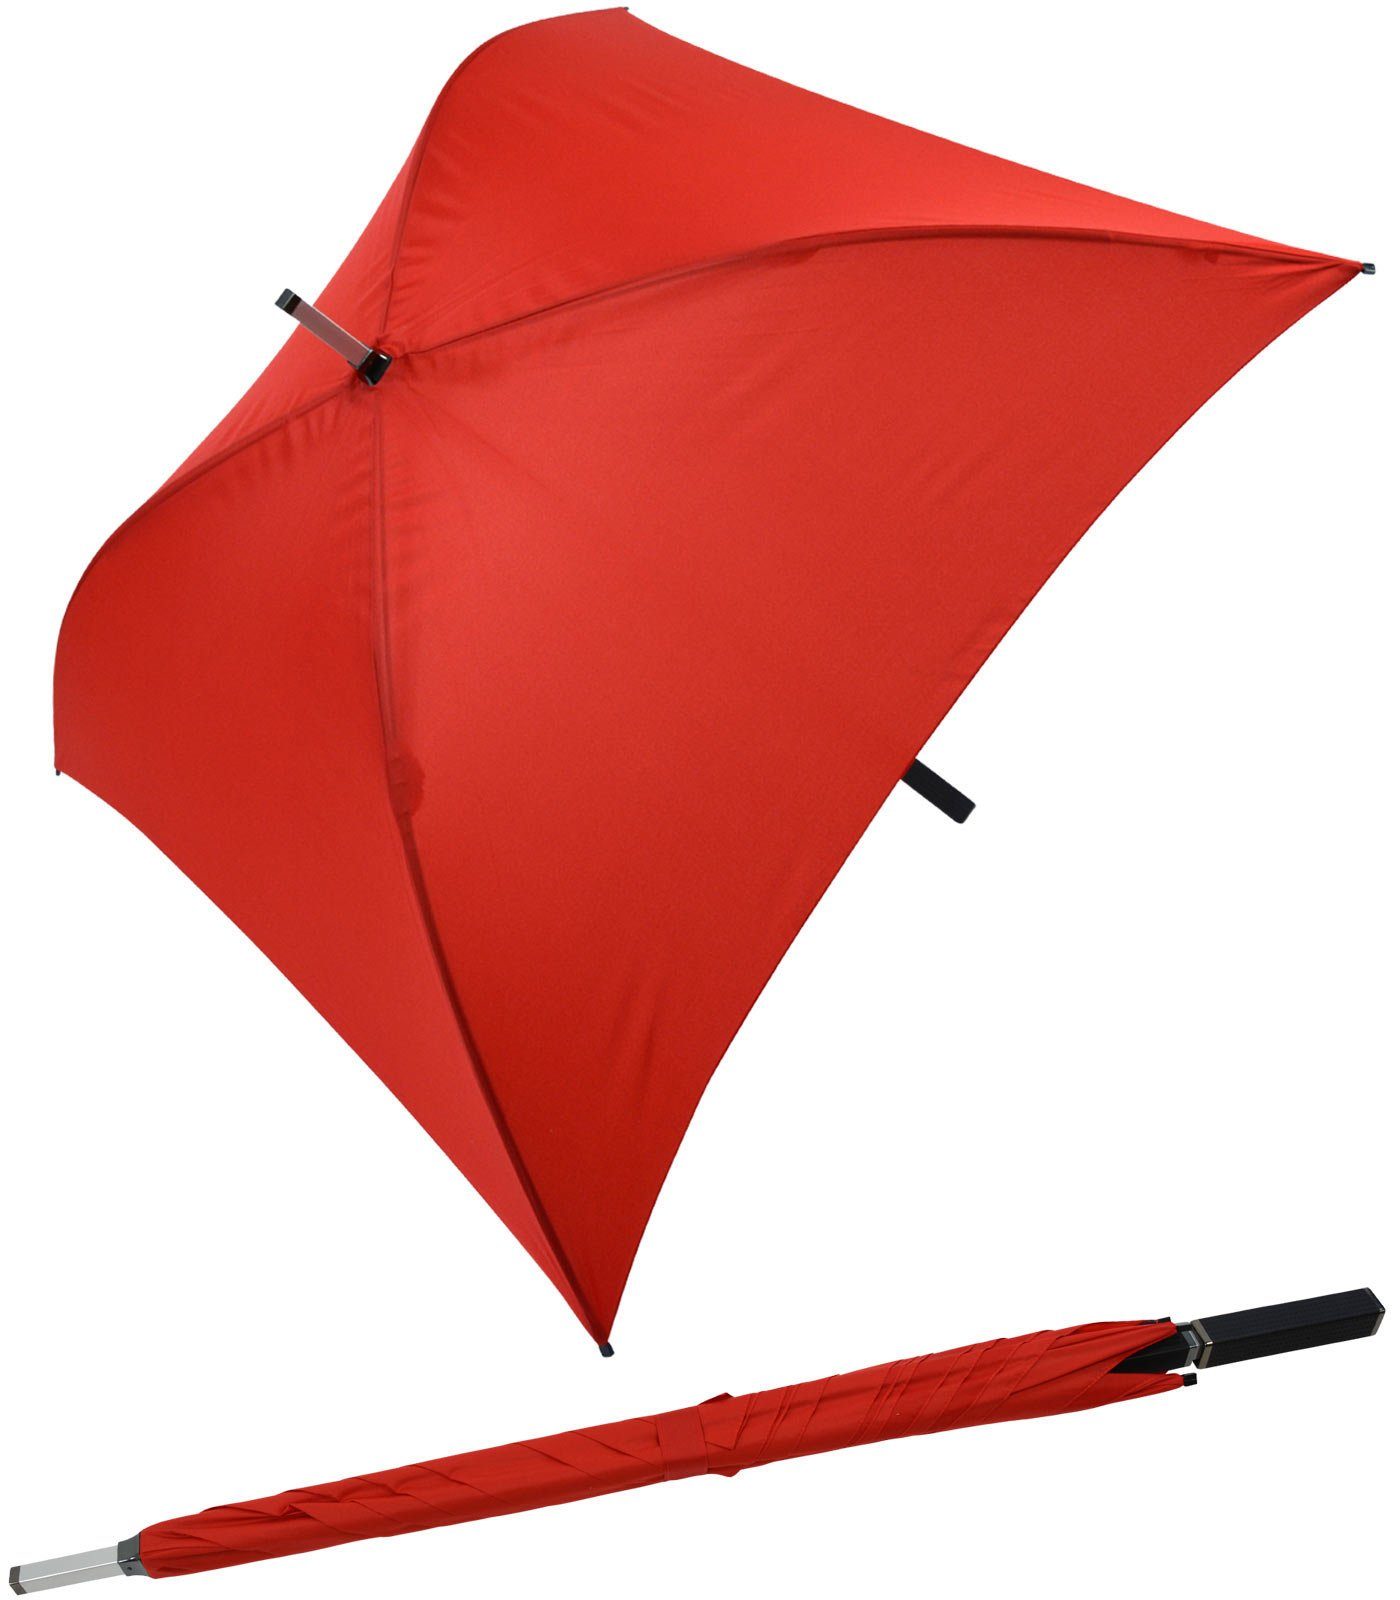 Impliva Langregenschirm All Square® voll quadratischer Regenschirm, der ganz besondere Regenschirm rot